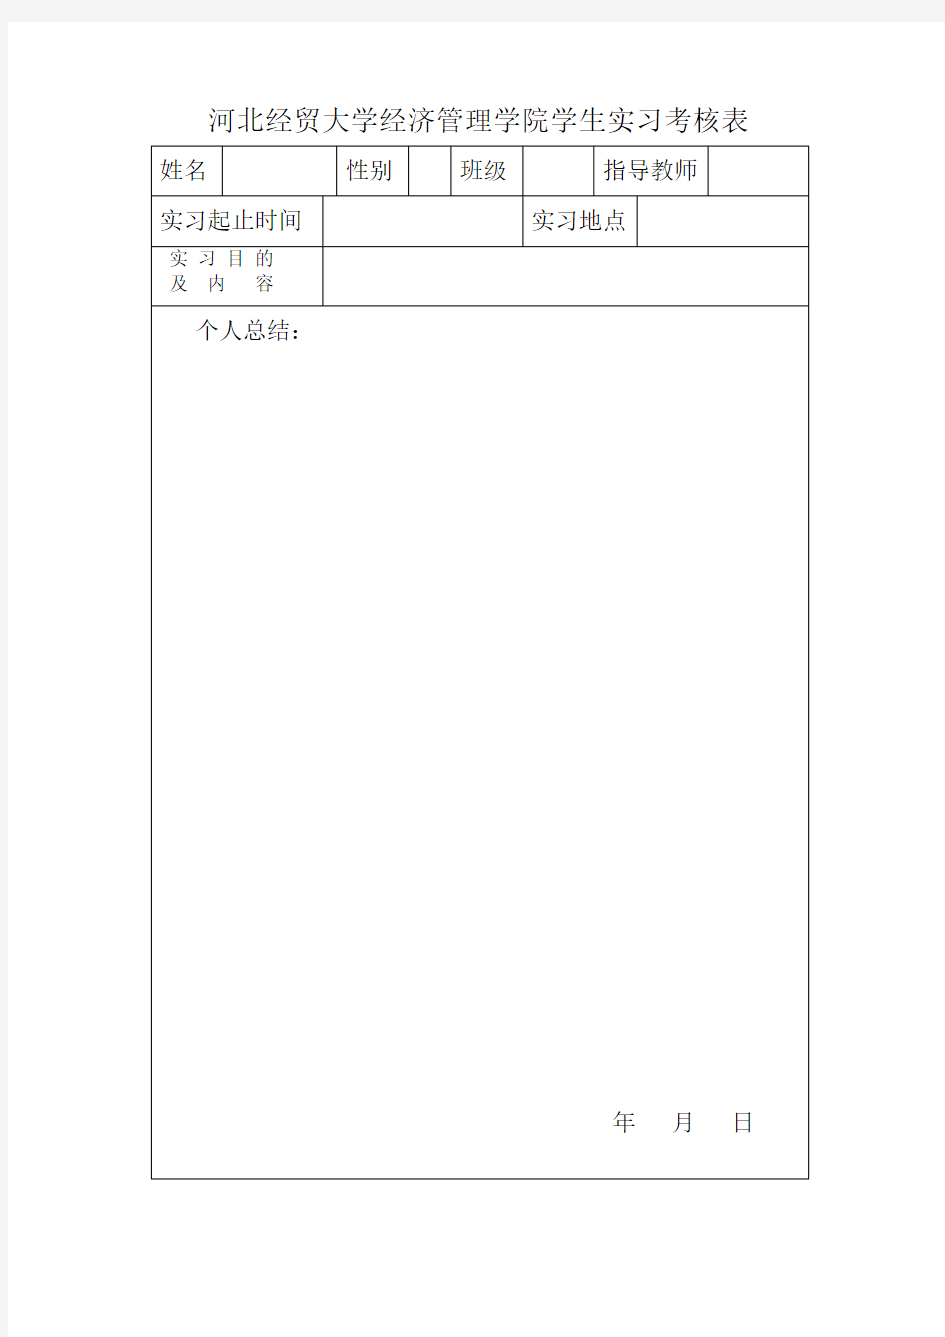 河北经贸大学经济管理学院学生实习考核表